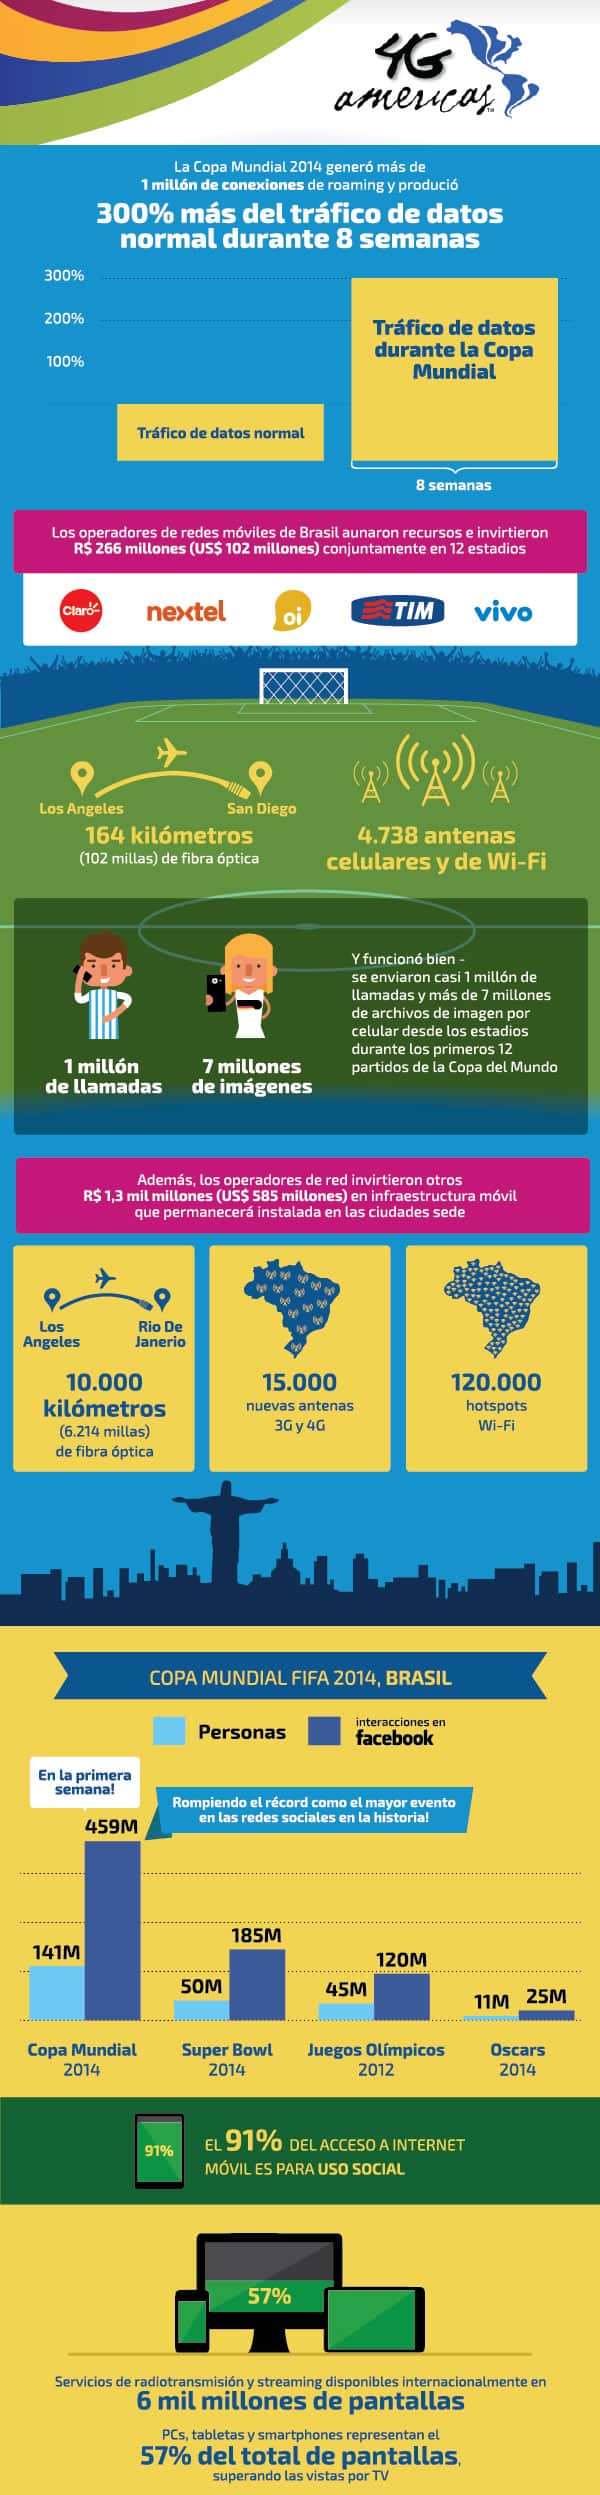 Infografia Telecomunicaciones Mundial de Fútbol Brasil 2014 - 4G Americas